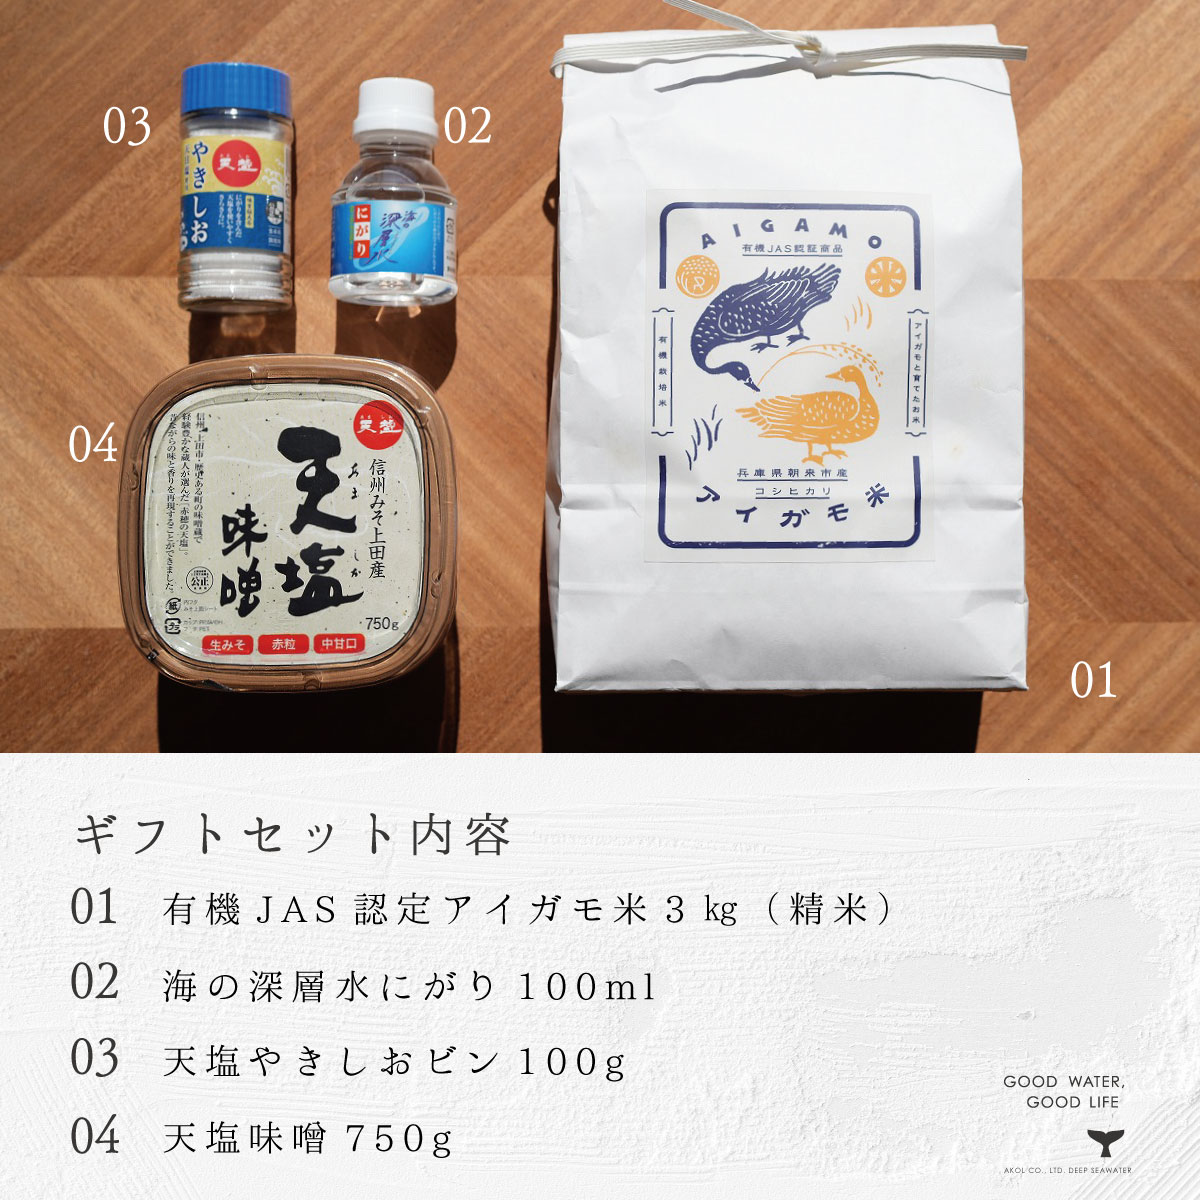 お米を楽しむセット　アコールショップ　兵庫県産・安心ブランド　農薬や化学肥料を使用していないコシヒカリ